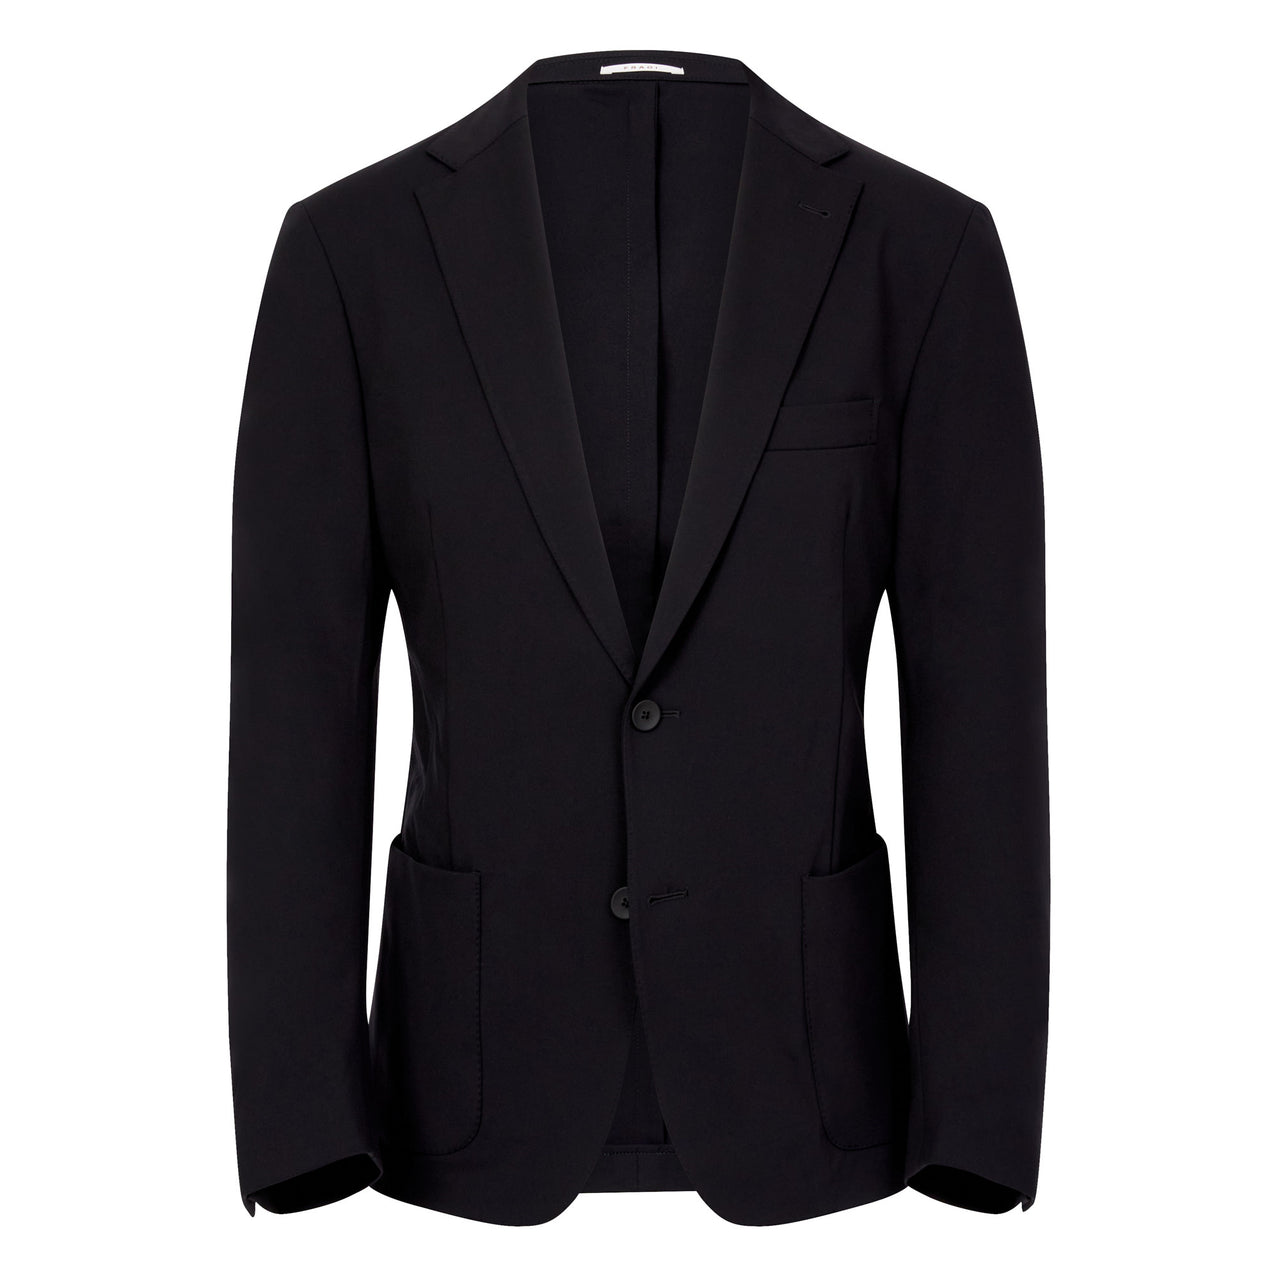 FRADI TECHNO ACTIVE Super Stretch Blazer Jacket BLACK